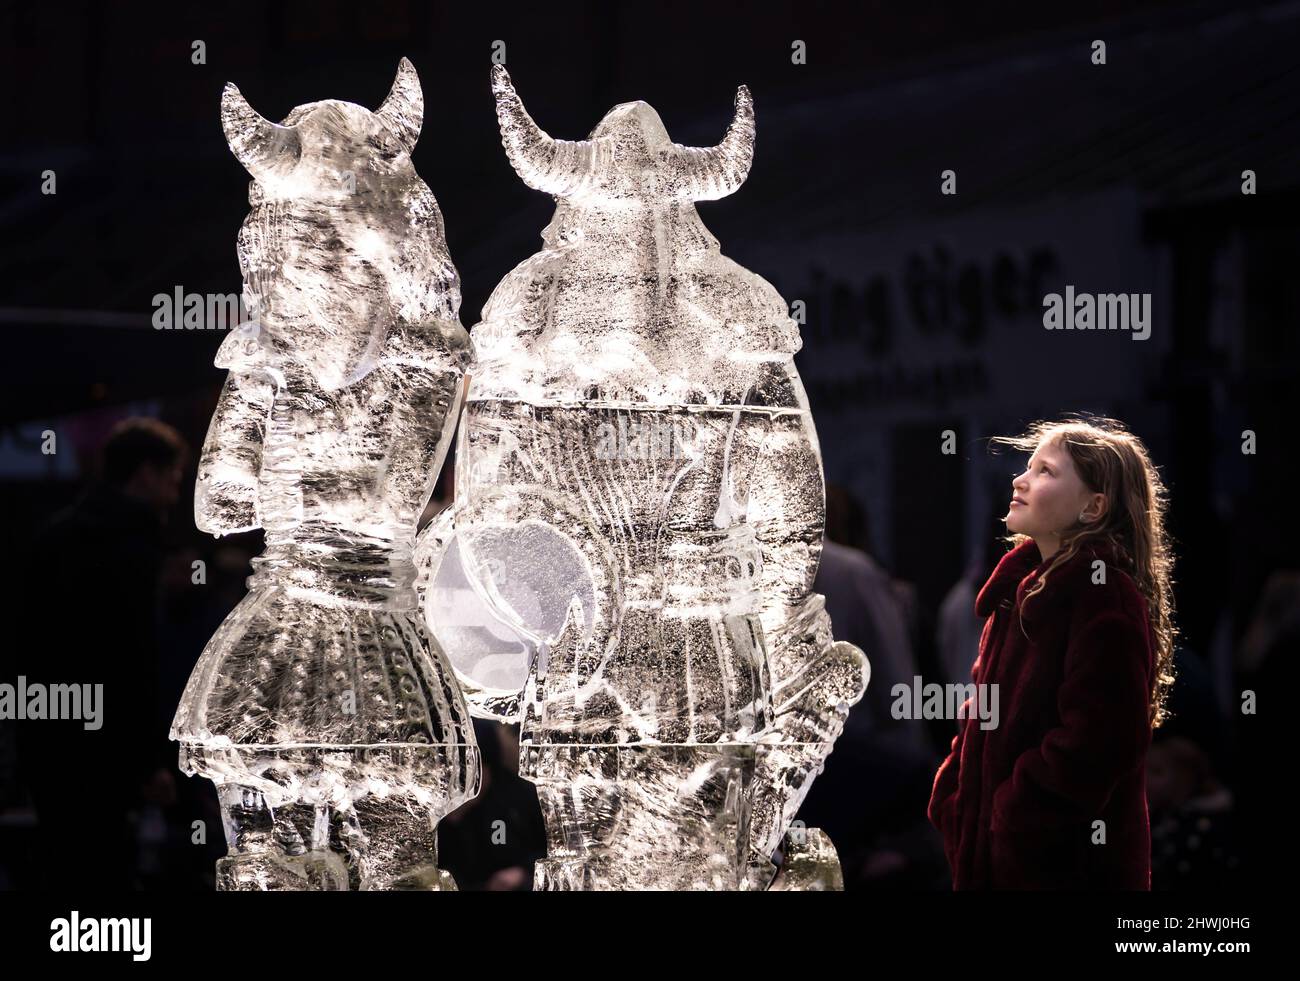 Bella Richardson, 7 ans, voit une sculpture sur glace de deux Vikings qui fait partie de la piste de glace de York dans le centre-ville de York, qui comprend plus de 40 sculptures de glace solide. Date de la photo: Dimanche 6 mars 2022. Banque D'Images